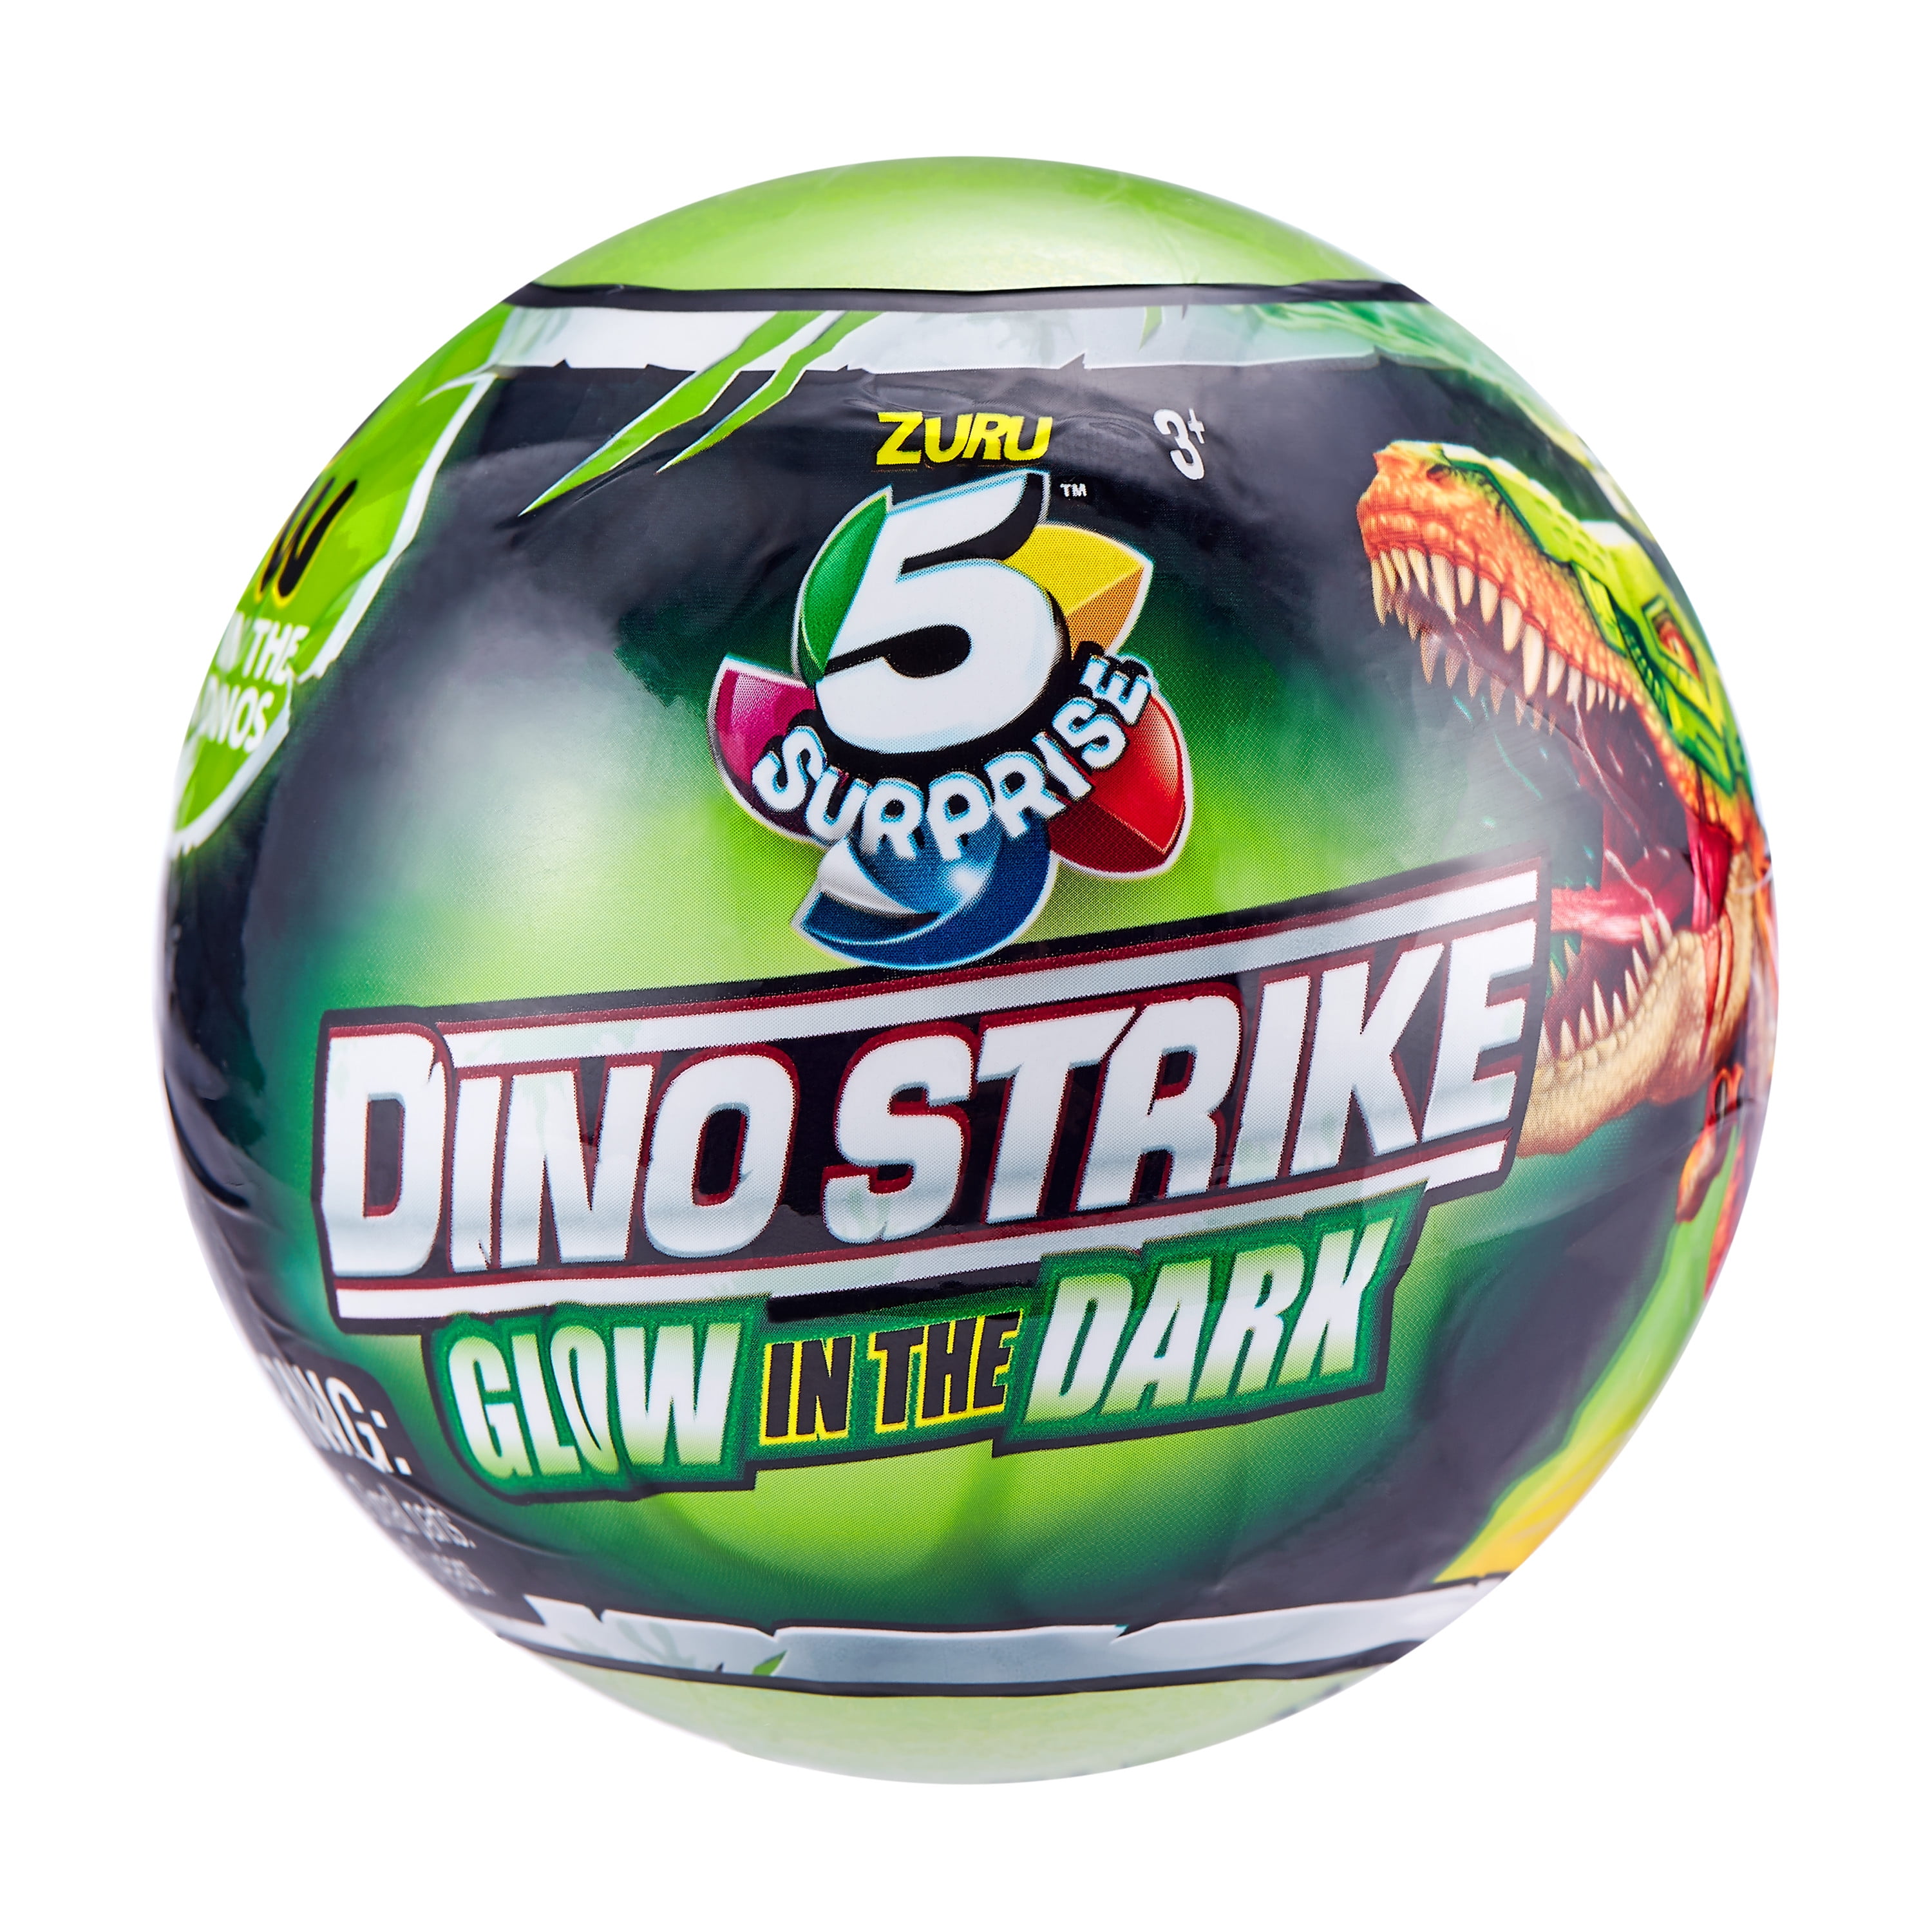 Zuru 5 Surprise Dino Strike Glow in the Dark 